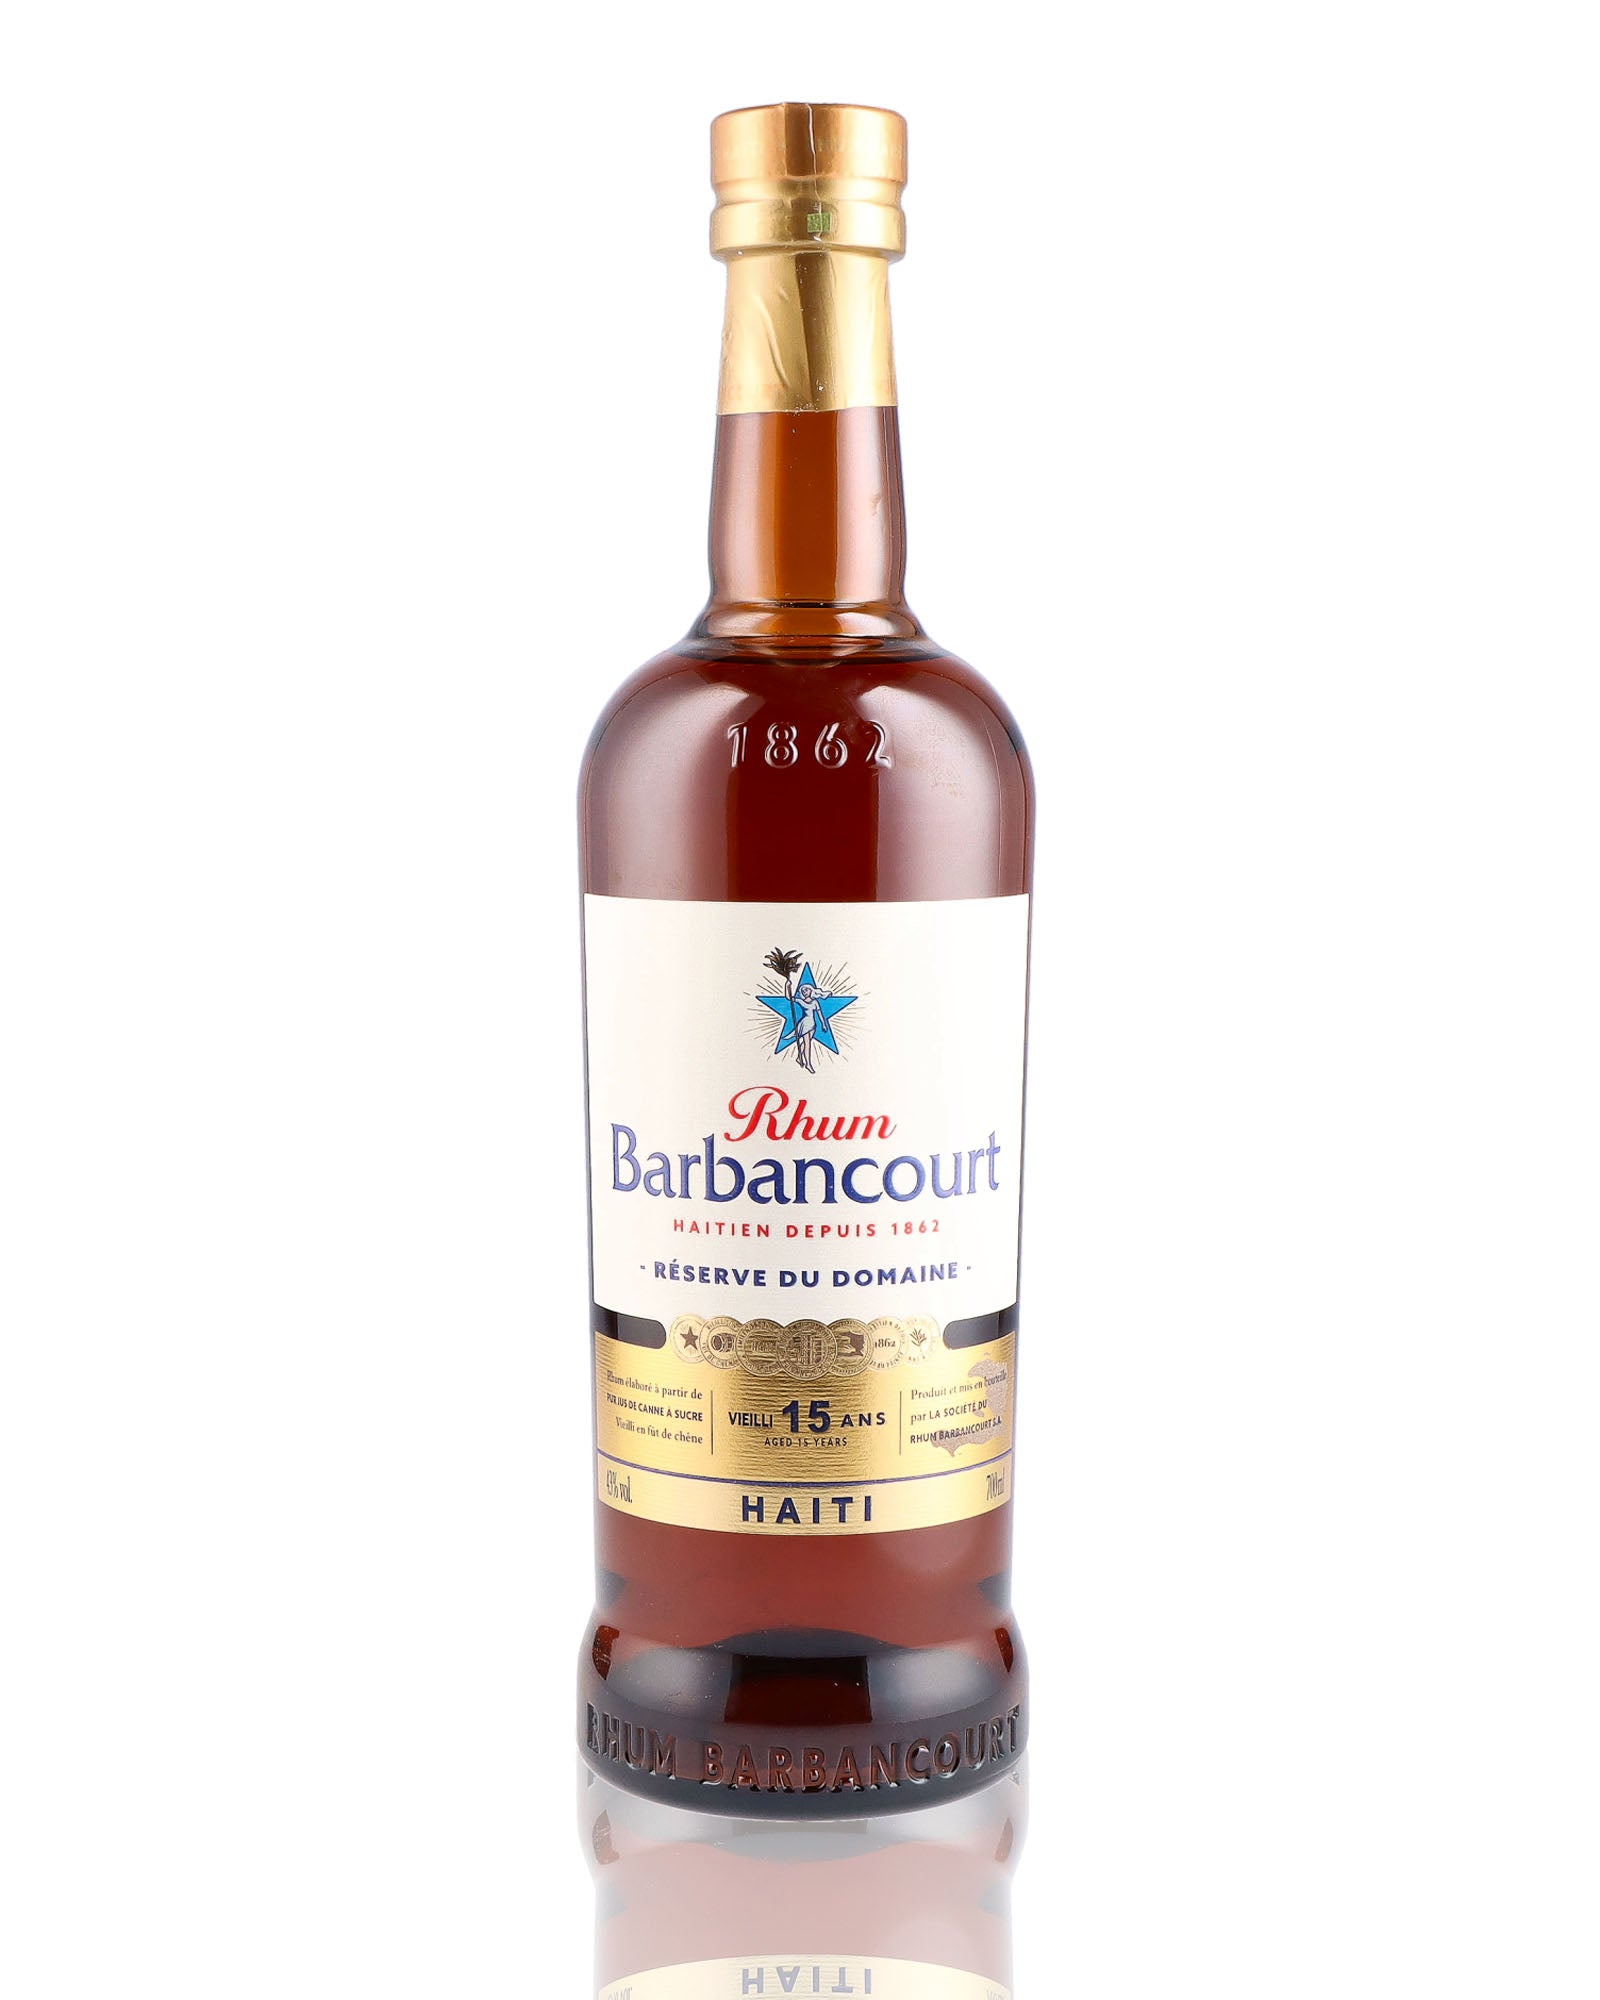 Une bouteille de rhum vieux, de la marque Barbancourt, nommée Réserve du Domaine, 15 ans d'âge.